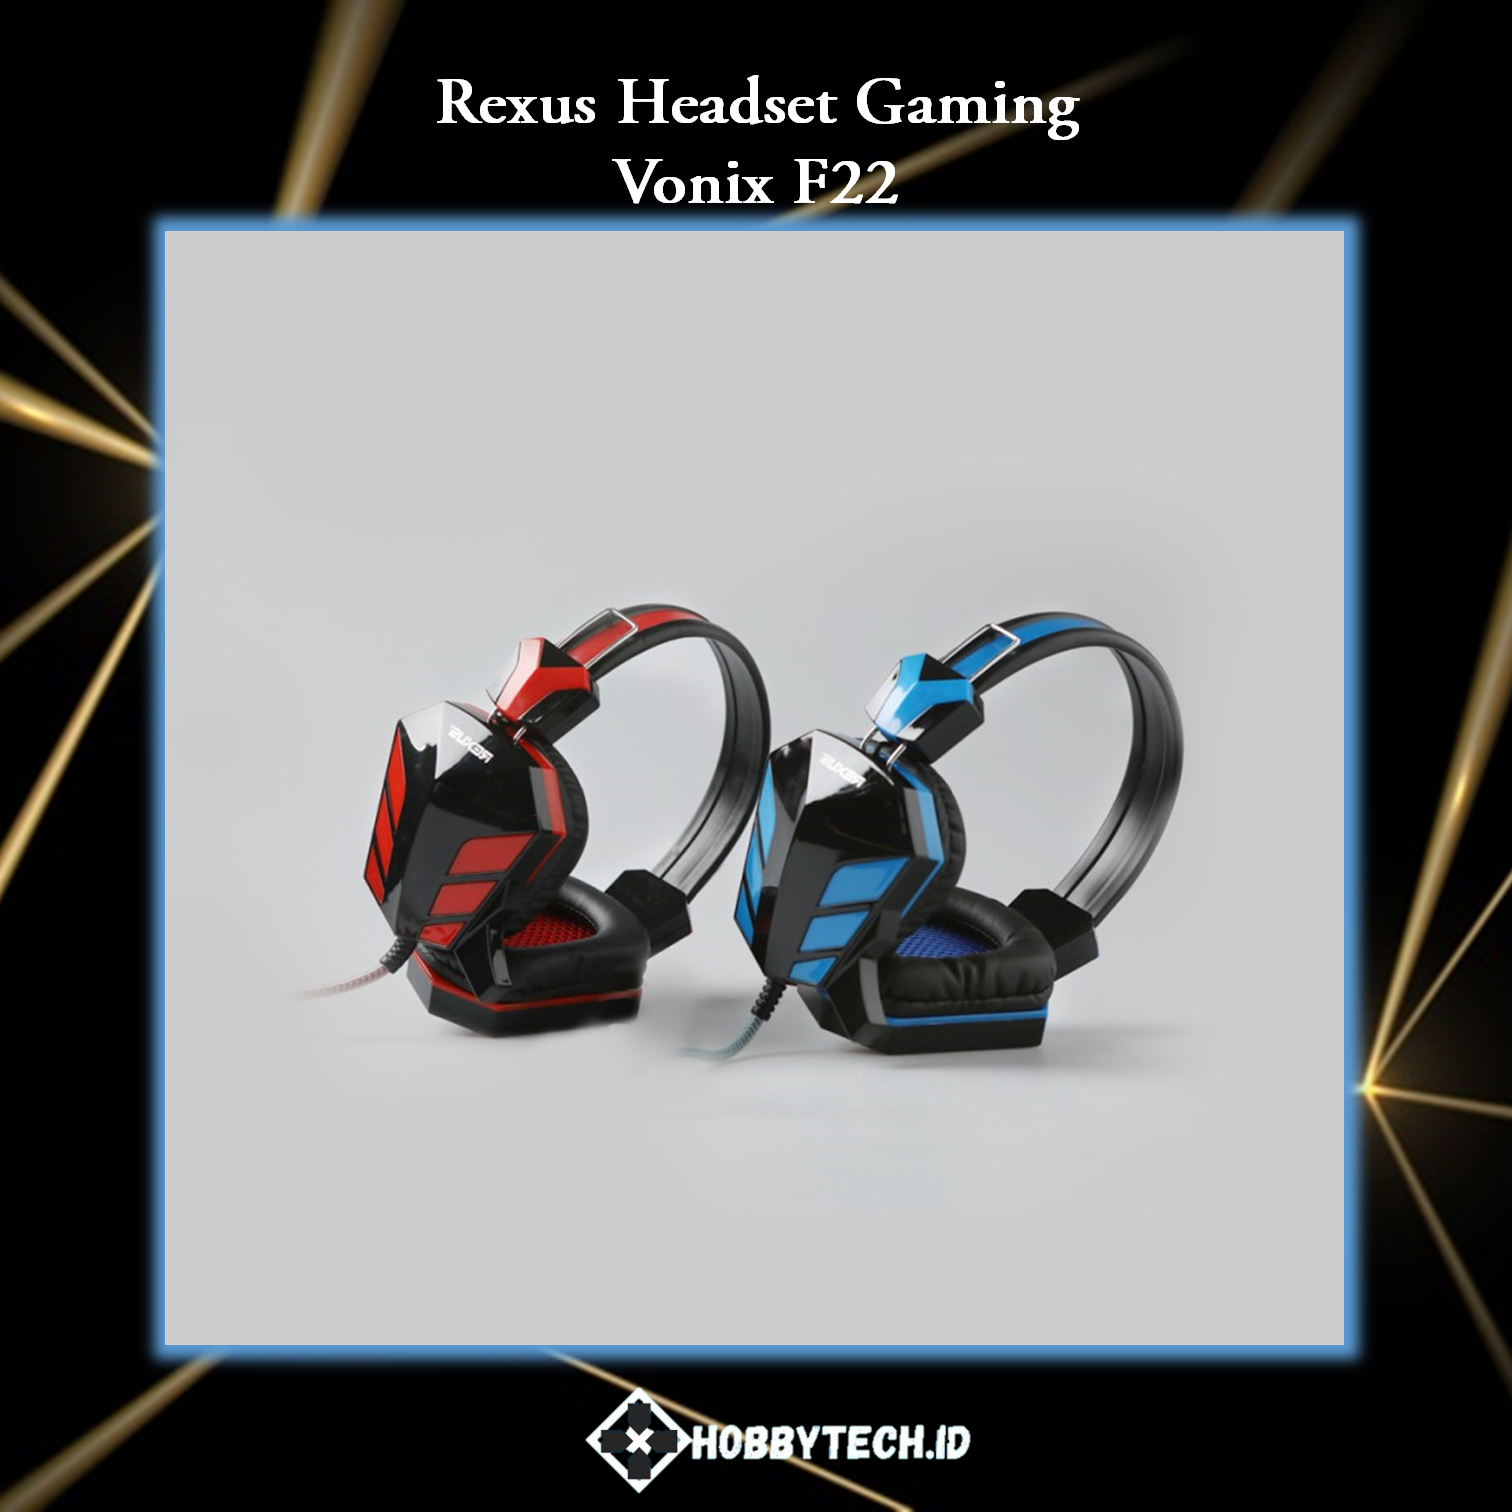 Rexus Headset Gaming Vonix F22